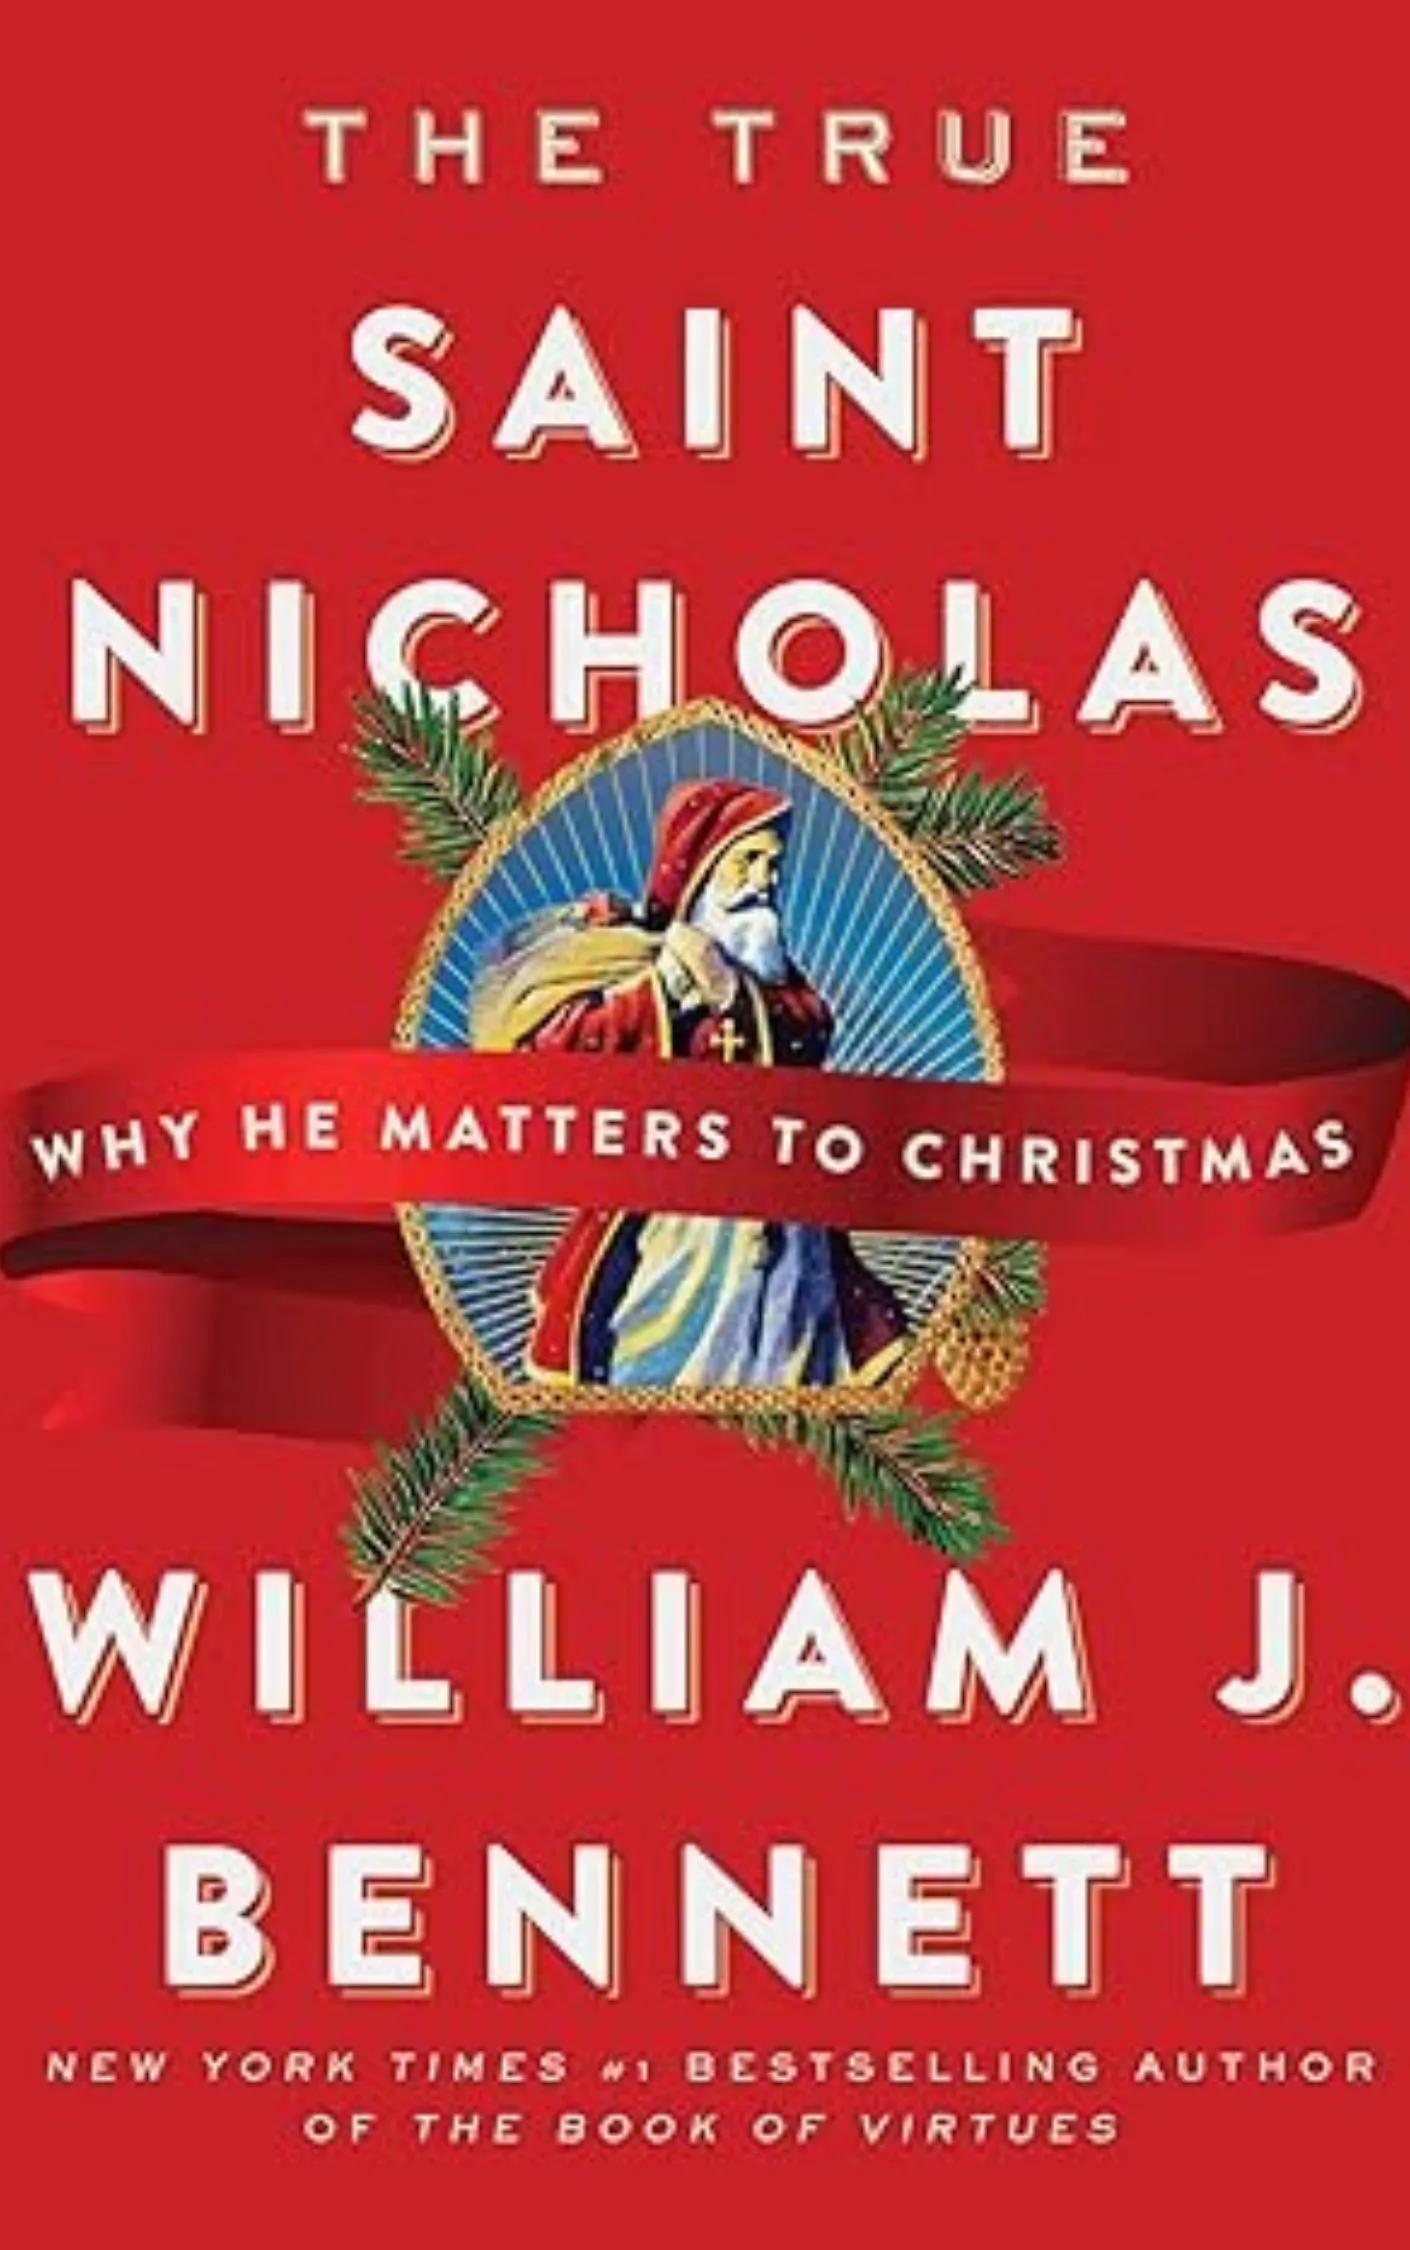 The True Saint Nicholas by William Bennett